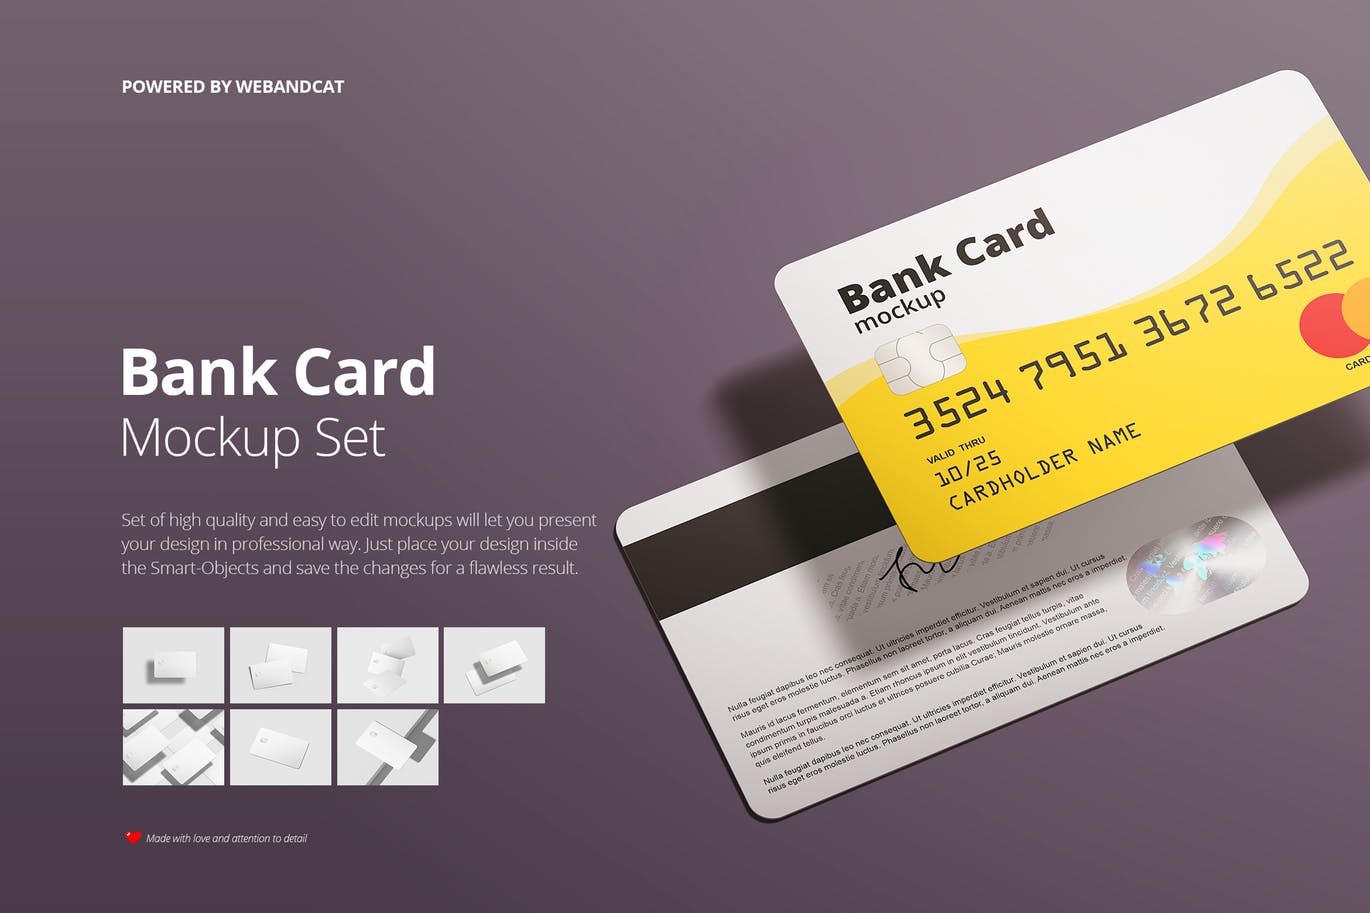 银行卡/会员卡版面设计效果图16图库精选模板 Bank / Membership Card Mockup插图